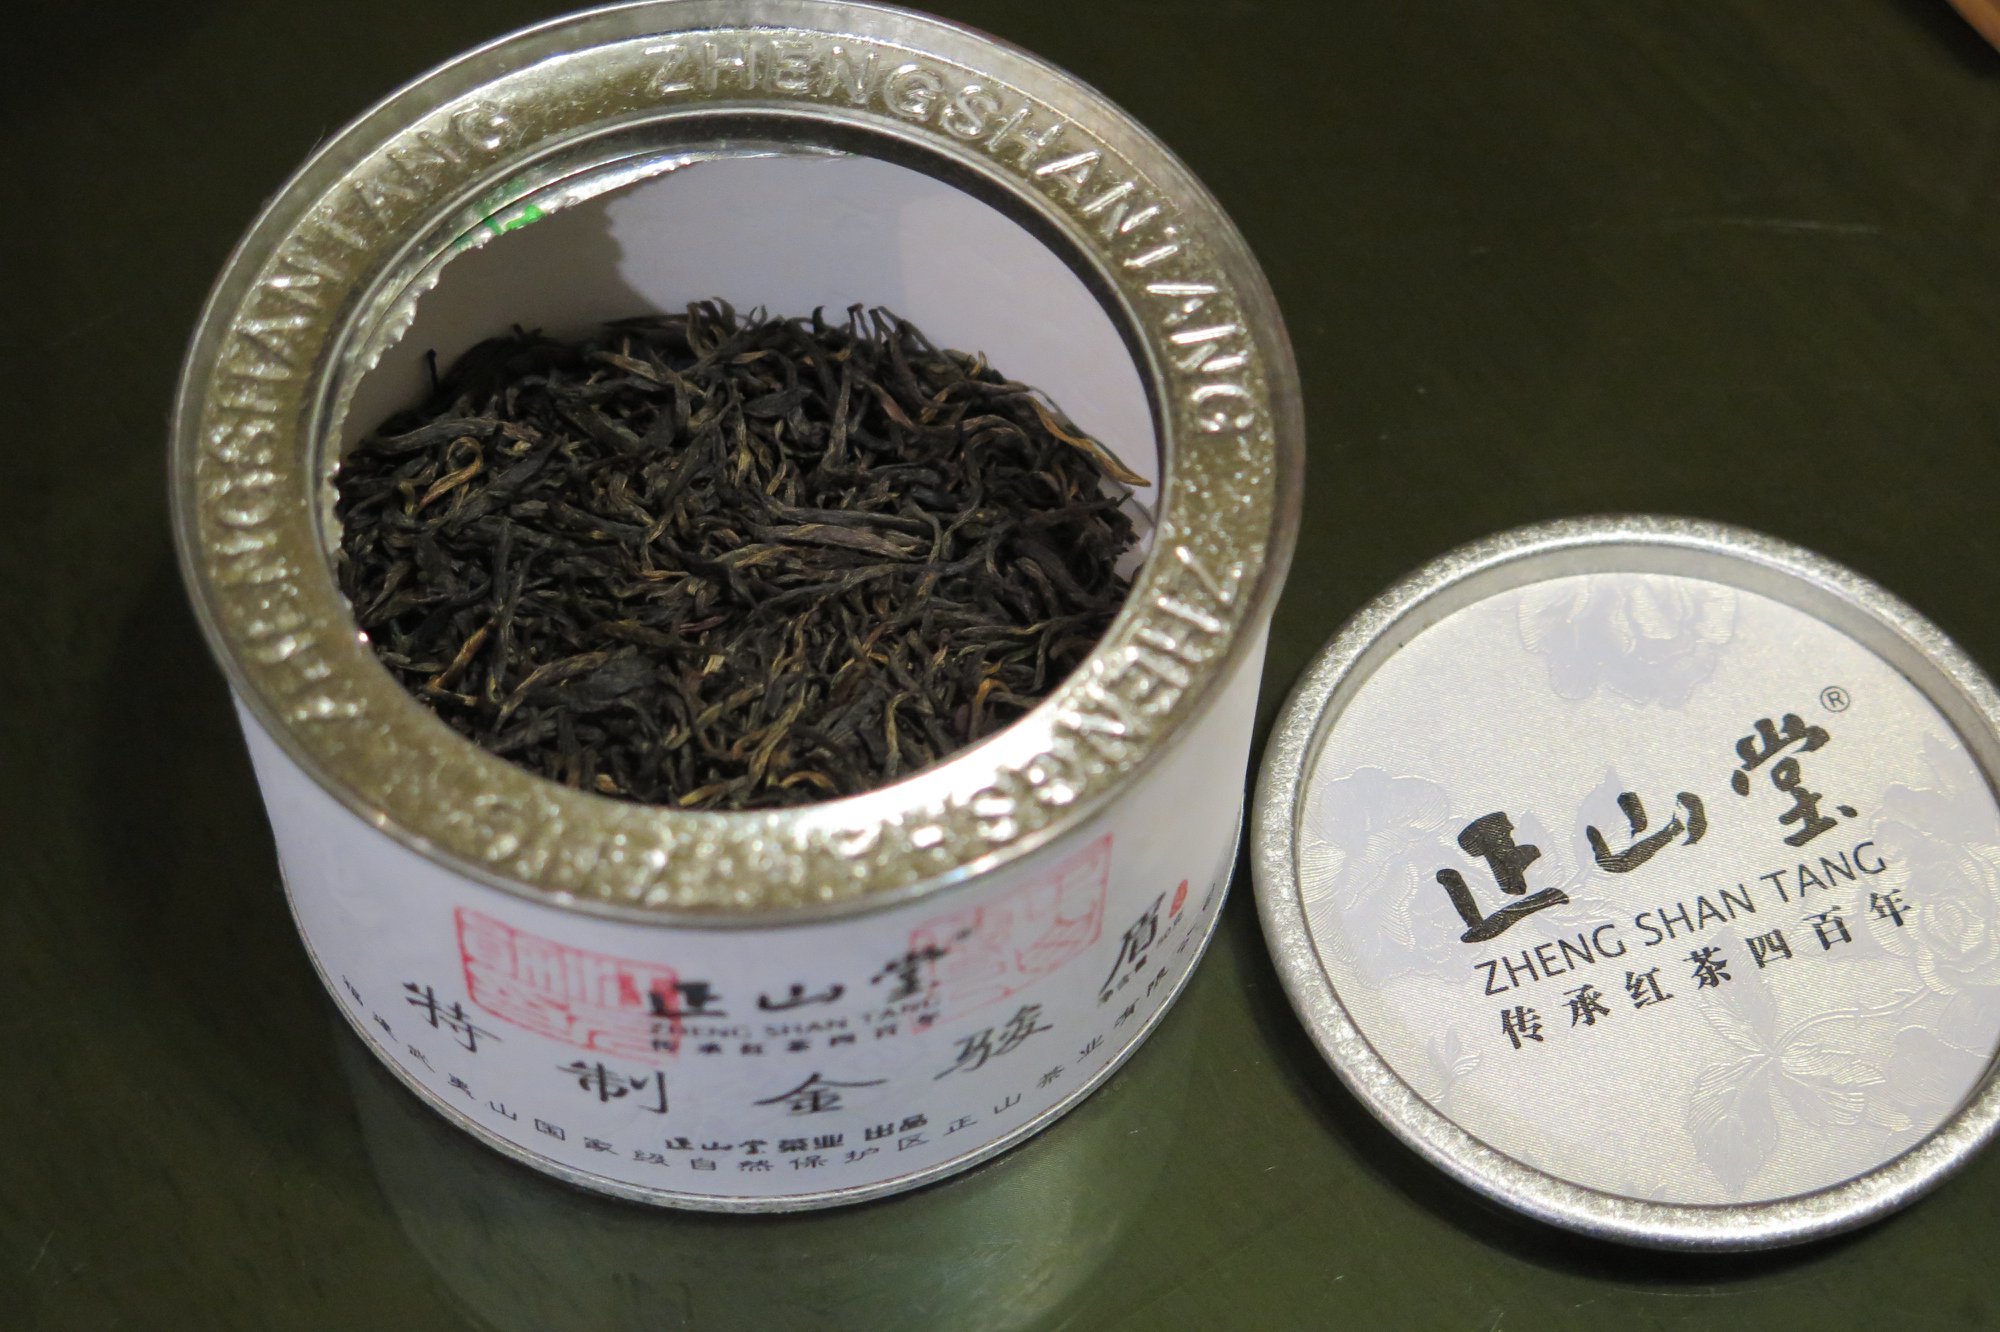 kyobashi tea - การ เก็บรักษาชา เก่า- ชาที่เก็บในกระปุก